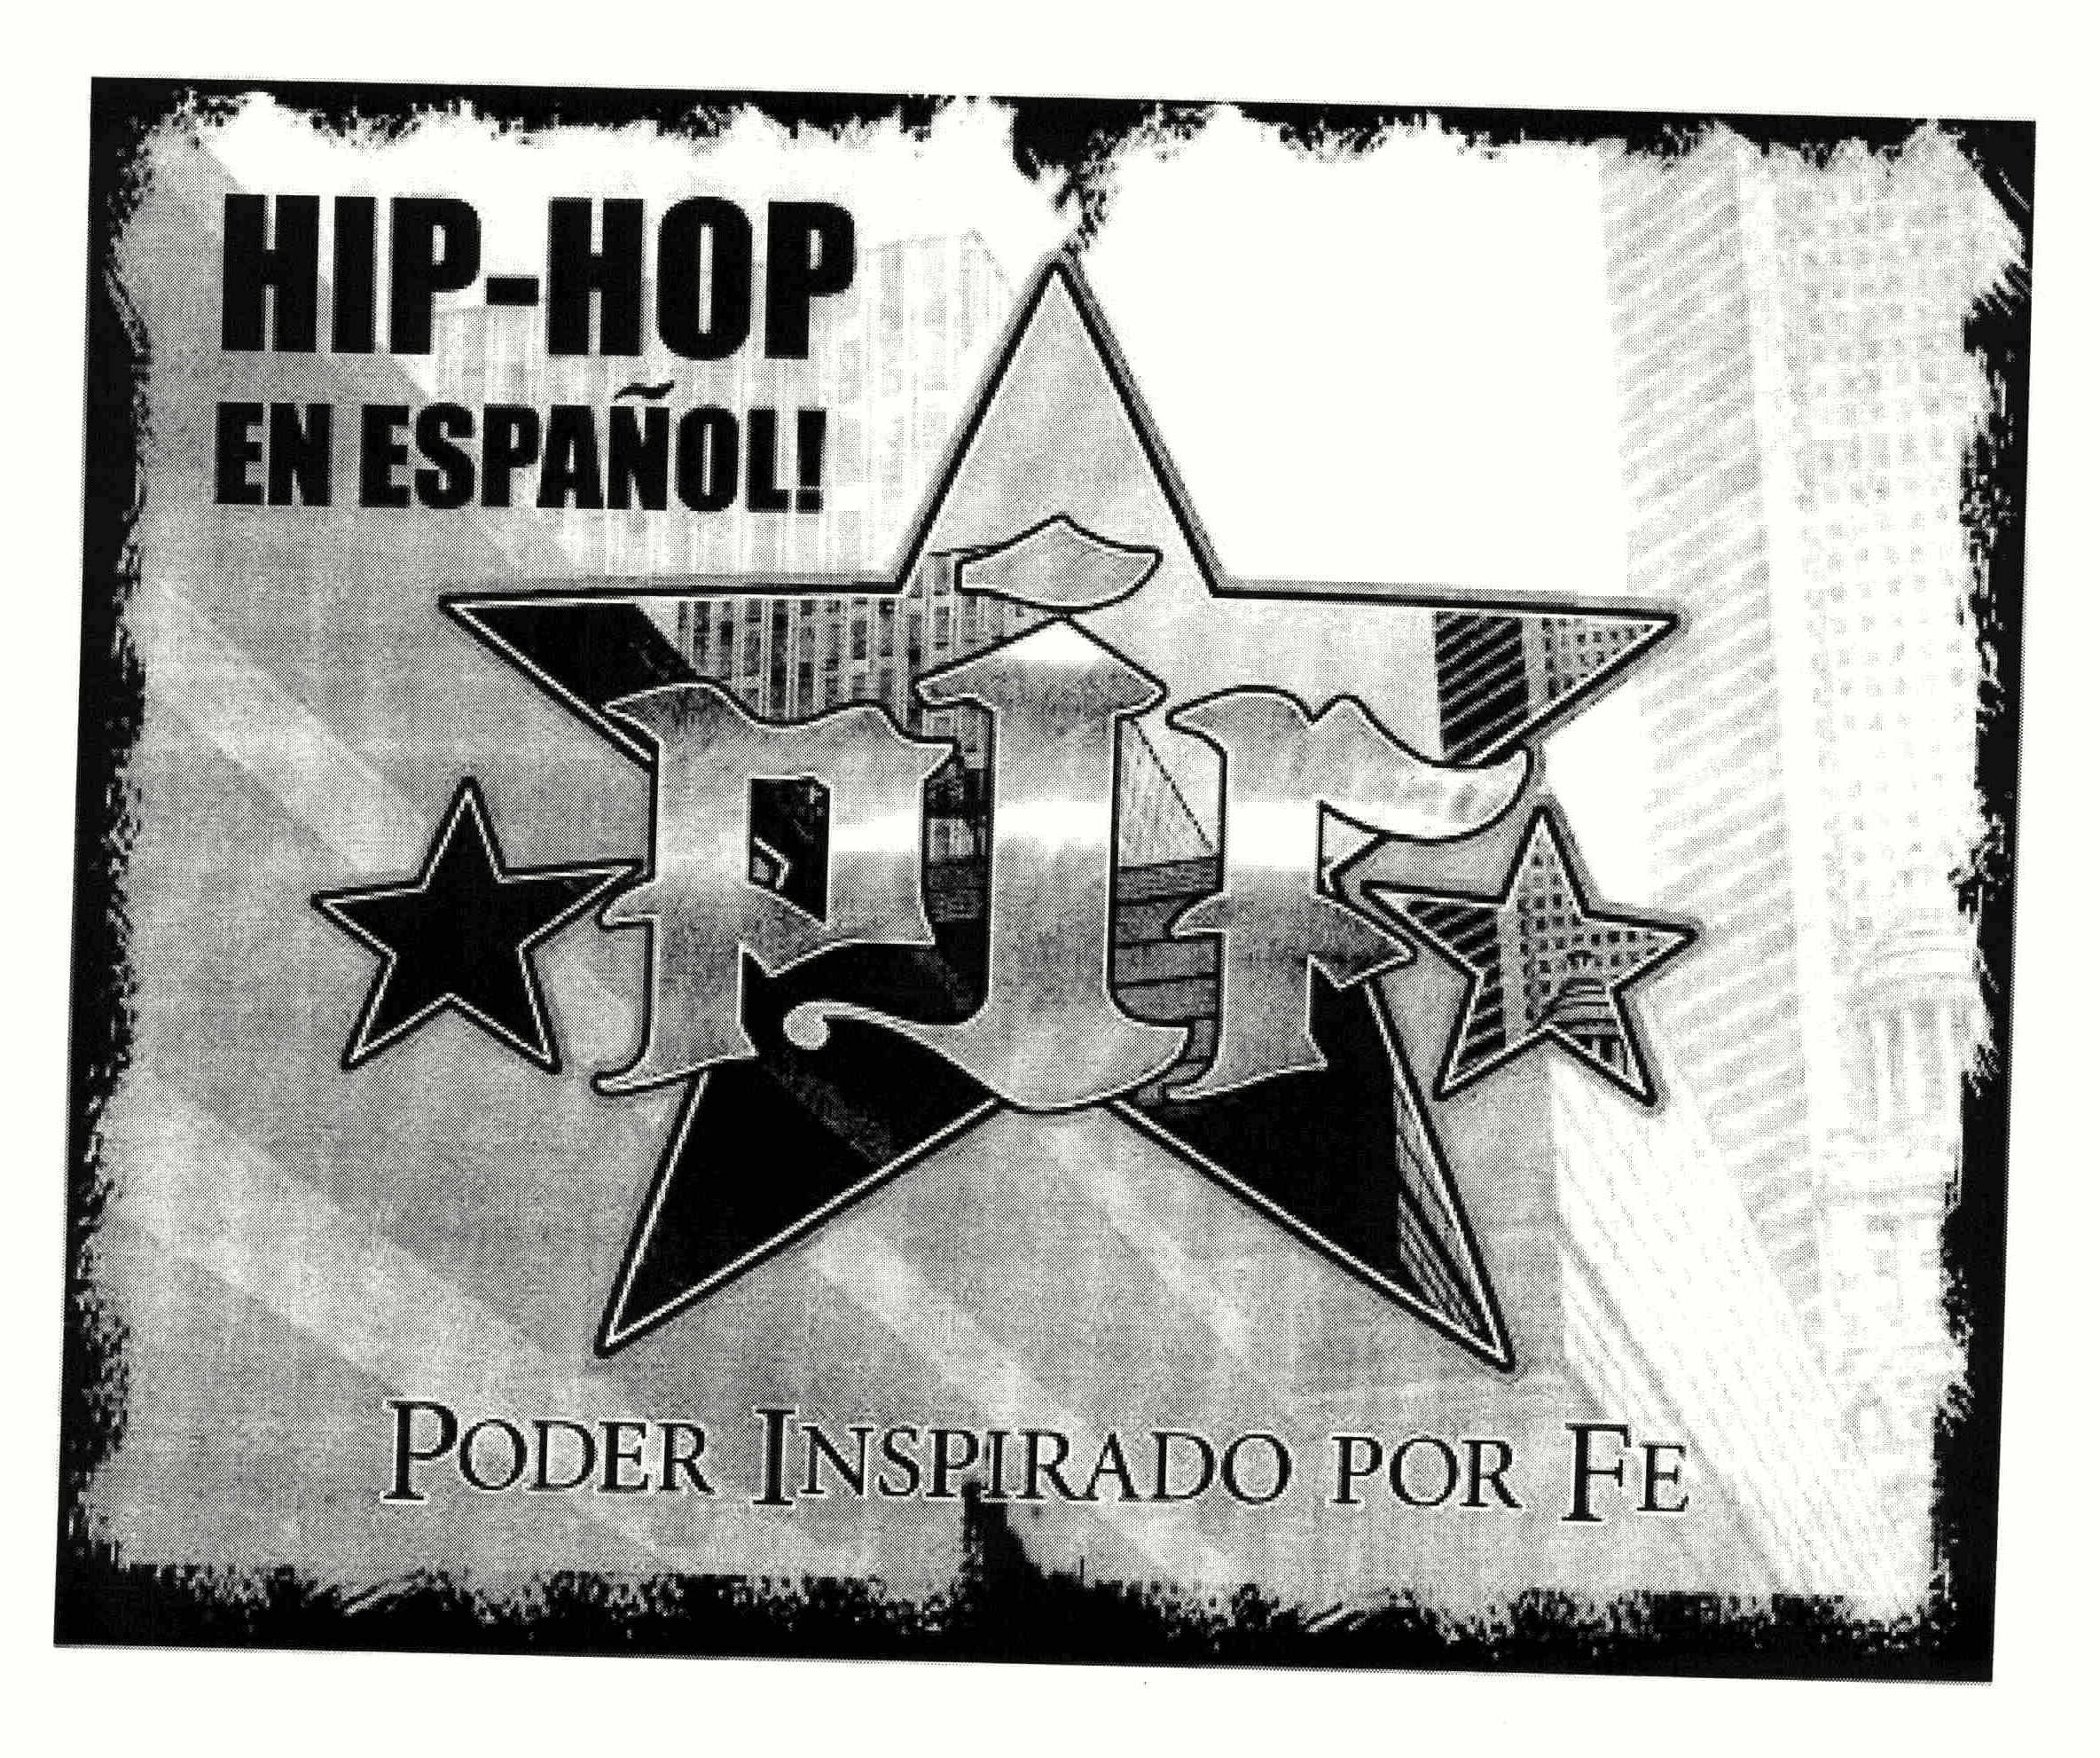 Trademark Logo HIP-HOP EN ESPAÑOL! PIF PODER INSPIRADO POR FE